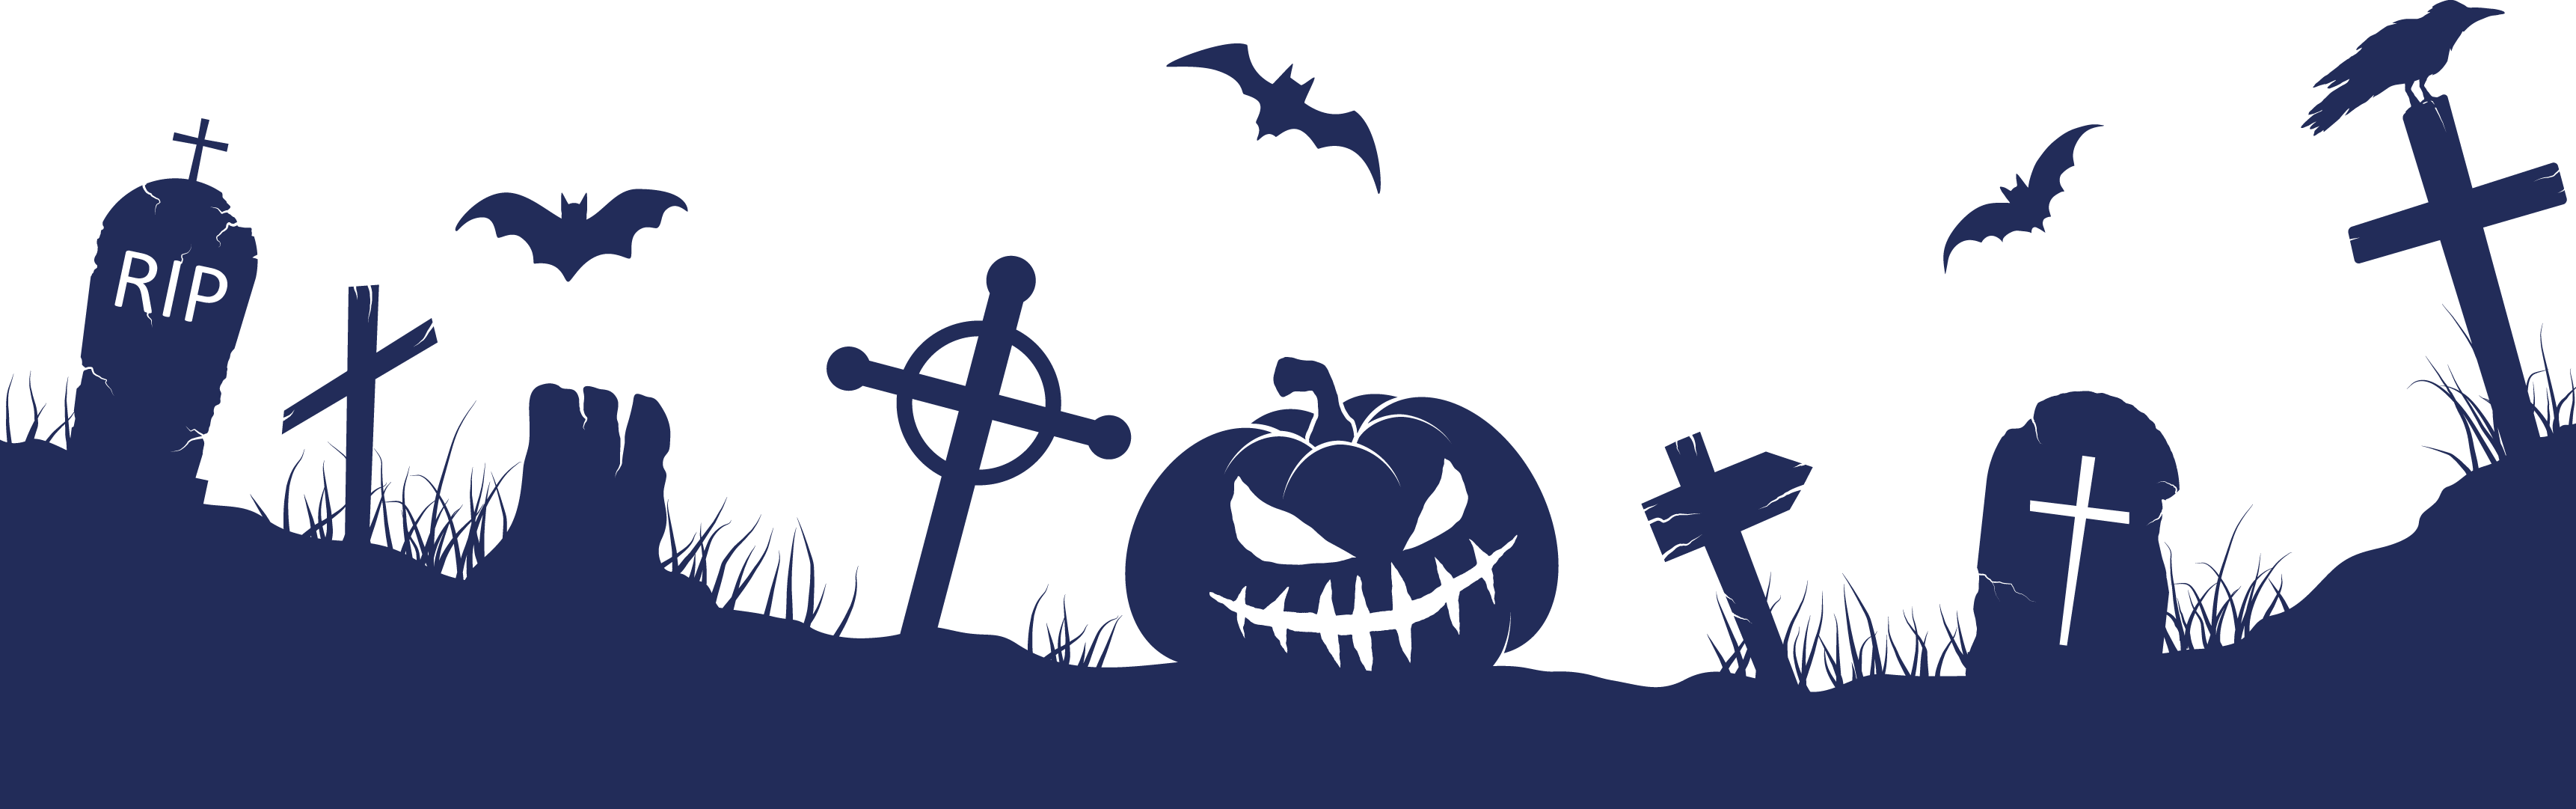 Illustration of halloween graveyard